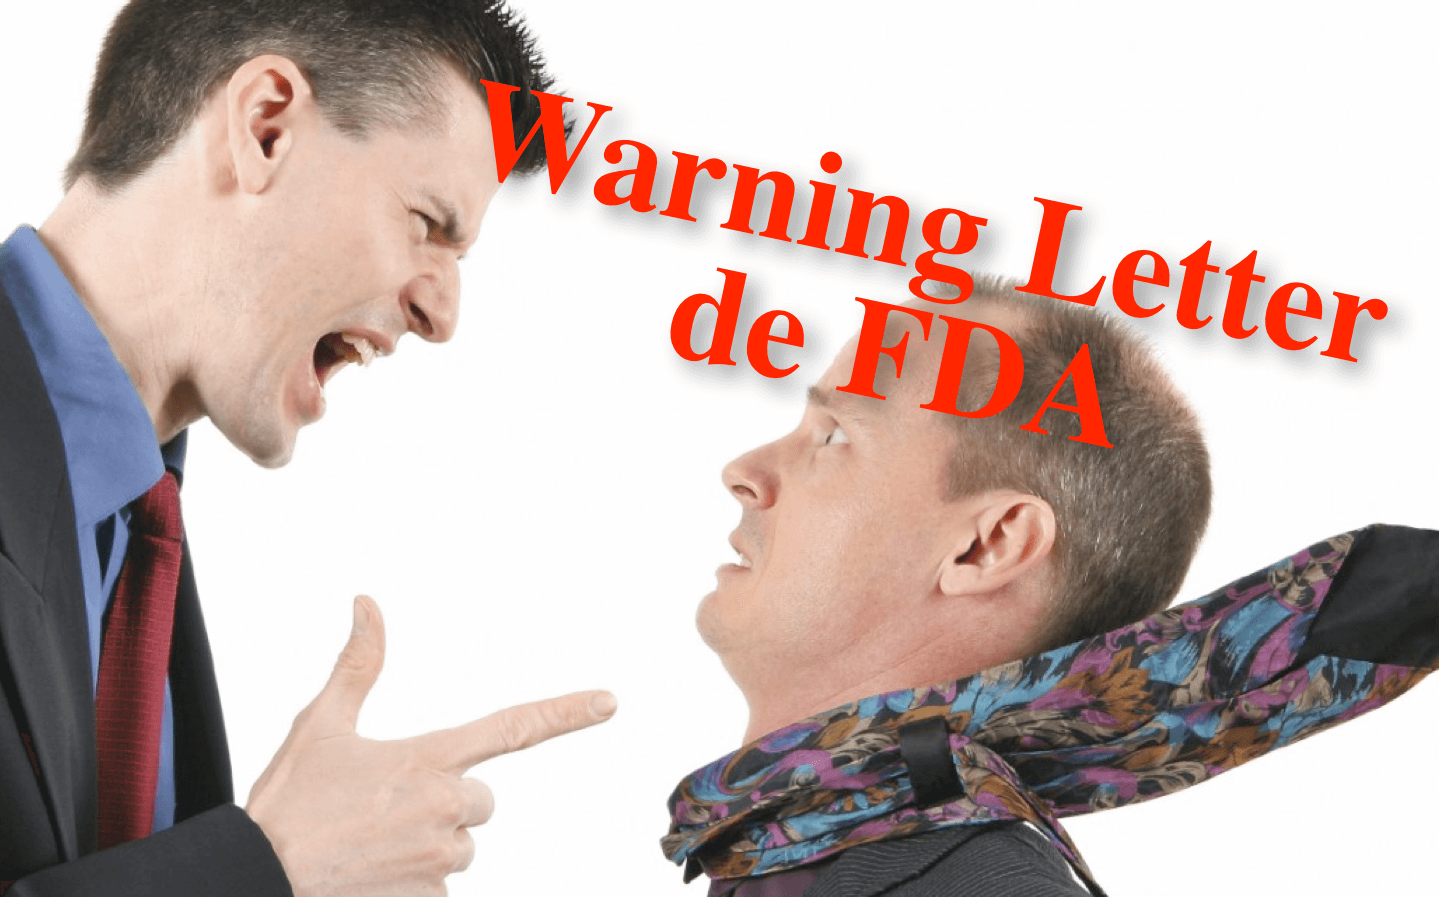 Warning Letter de FDA